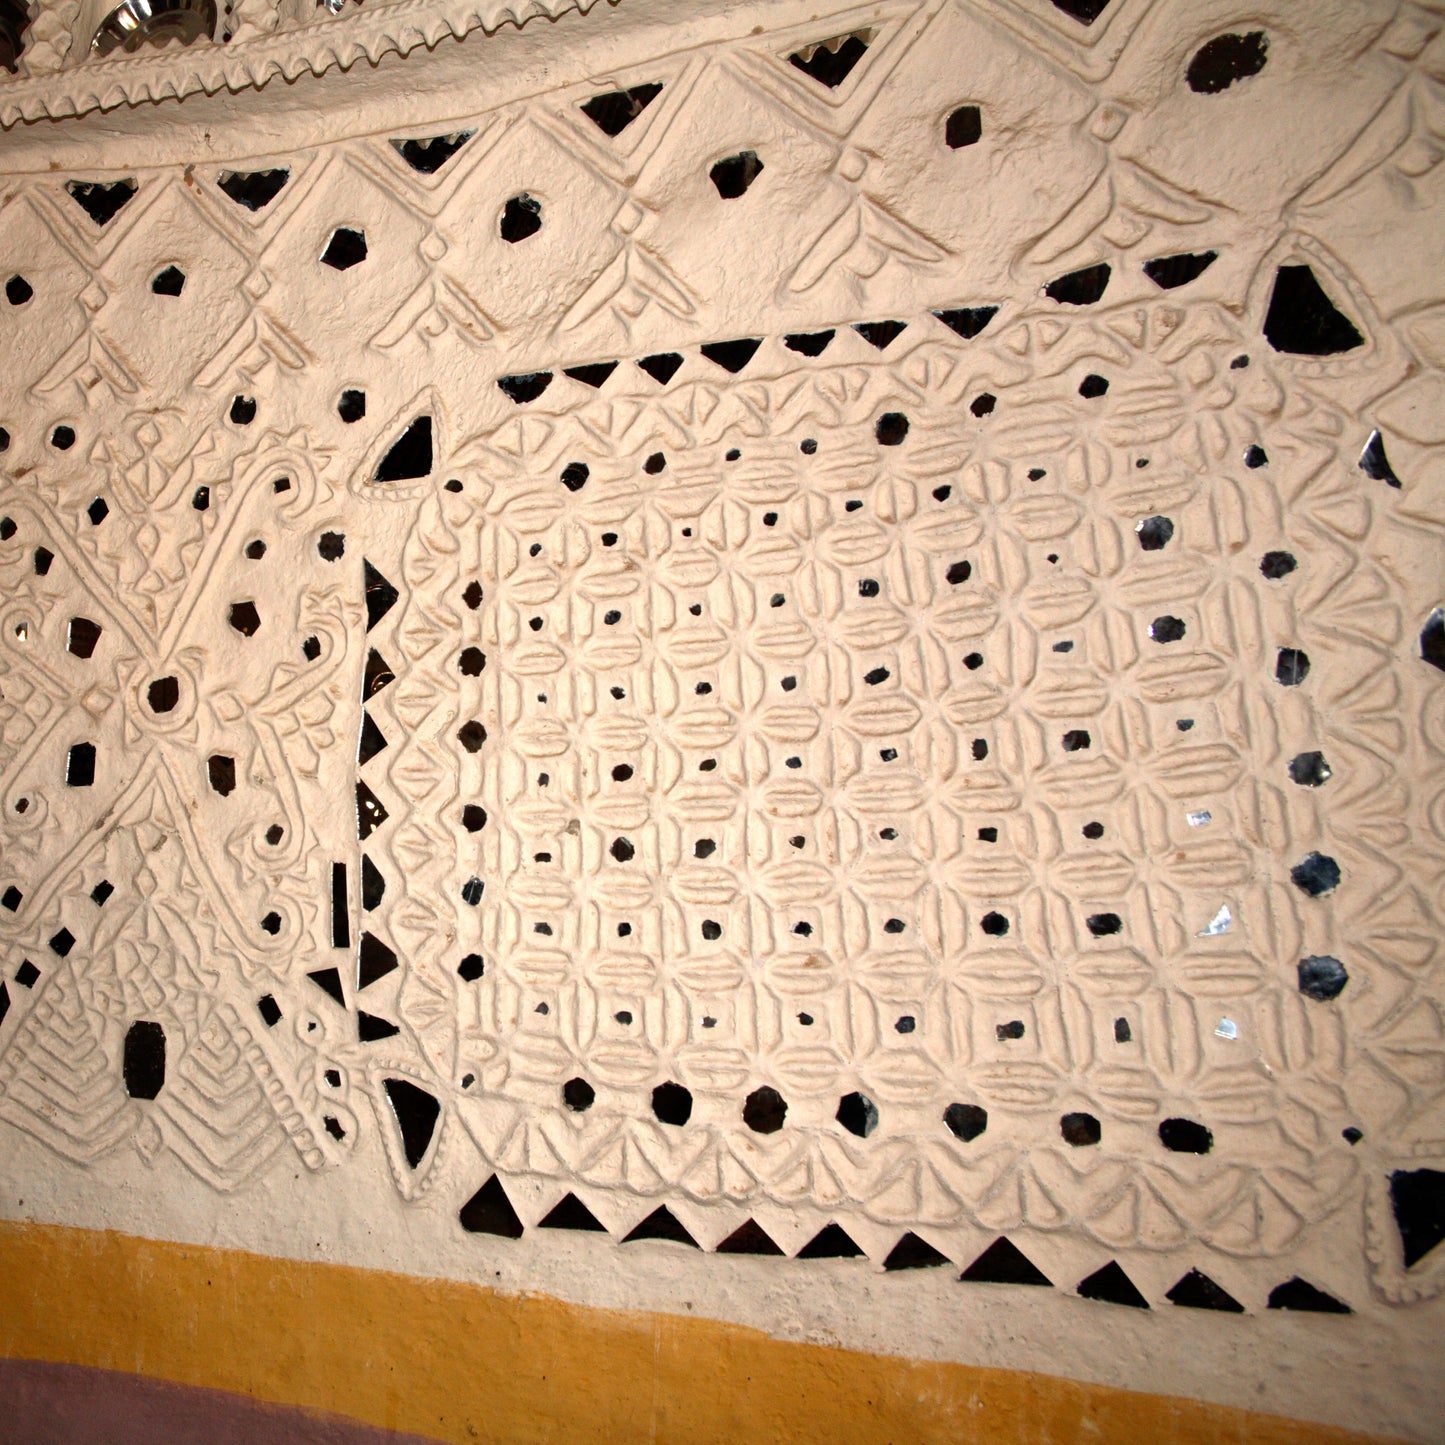 Textile Tour, India